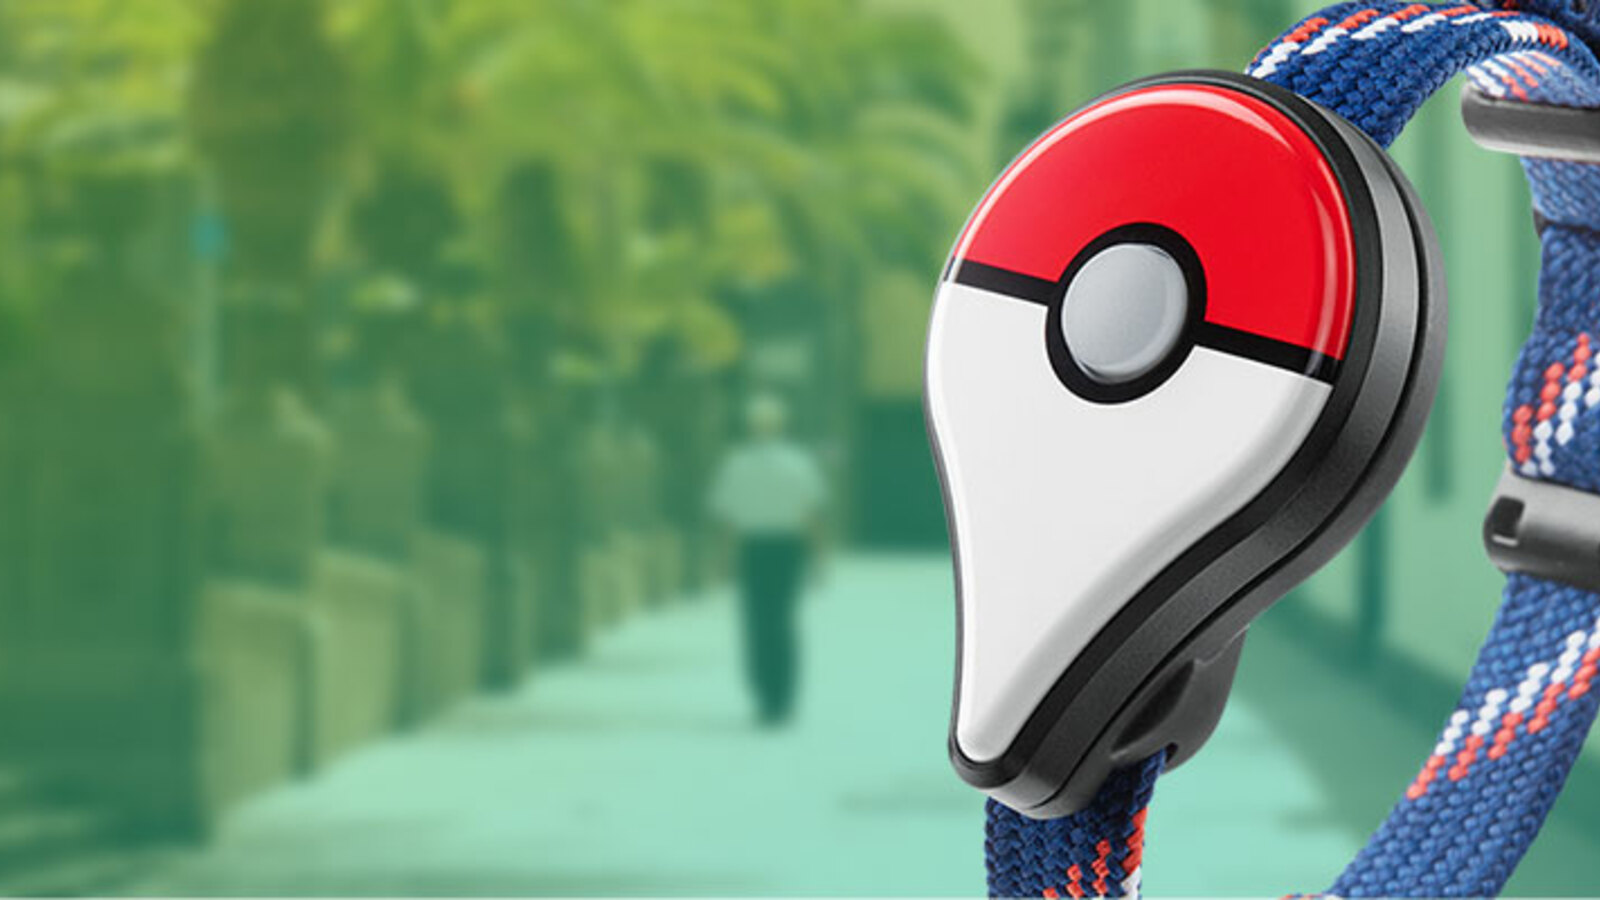 Pokémon Go Accounts Targeted by Bogus Pokémon Go Bot